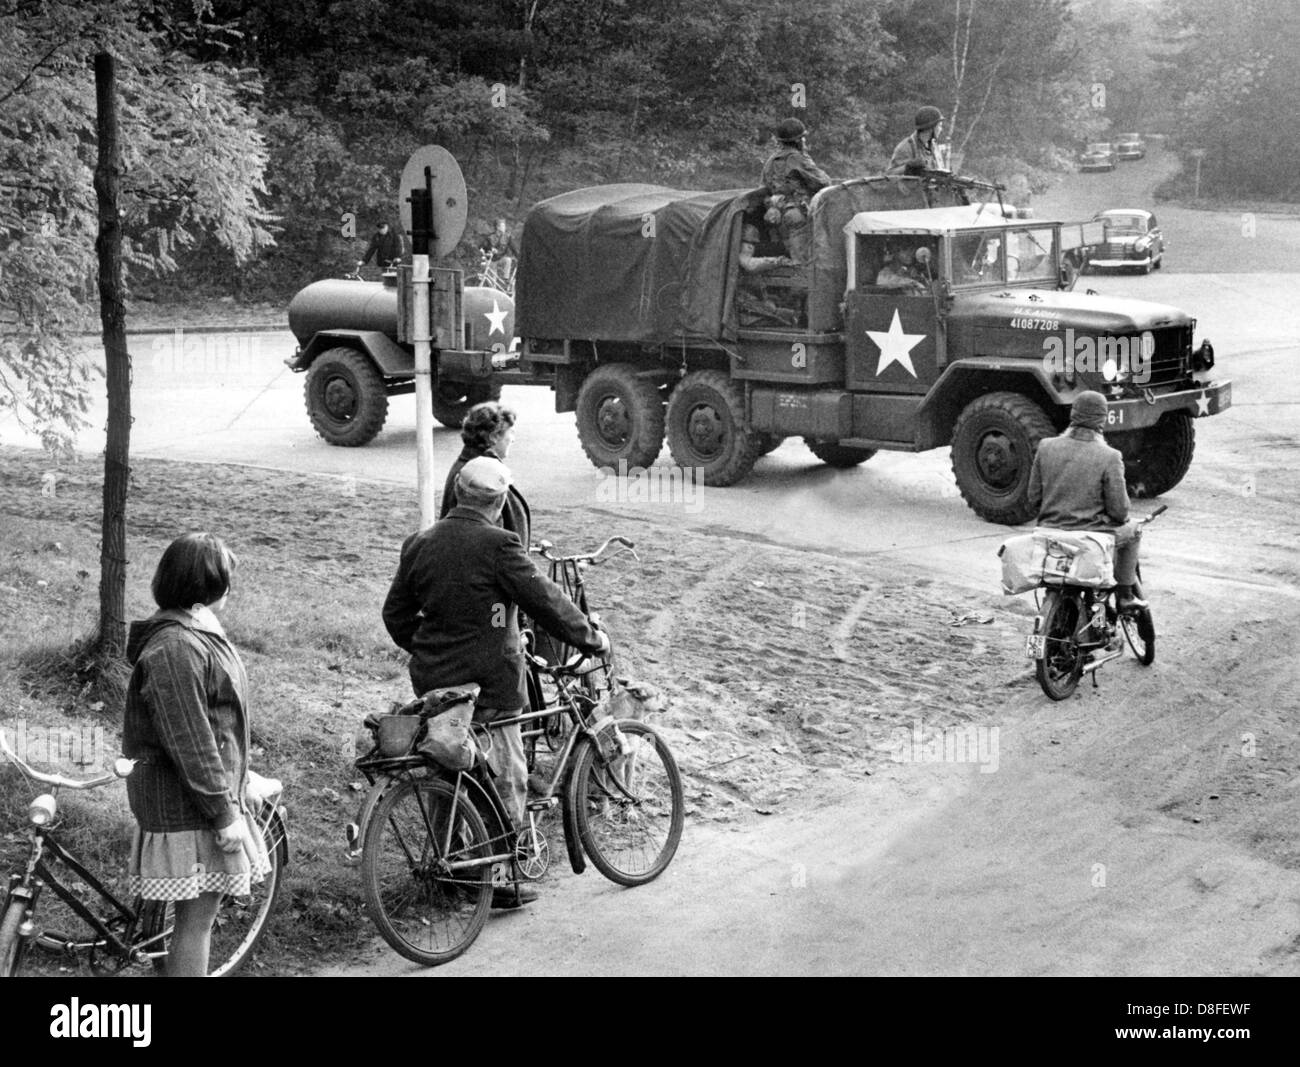 Un véhicule militaire américain est sur la voie d'un exercice sur le terrain dans la région de Grunewald à Berlin le 23 octobre en 1962. L'exercice faisait partie d'une manœuvre de quatre jours des troupes américaines. Banque D'Images